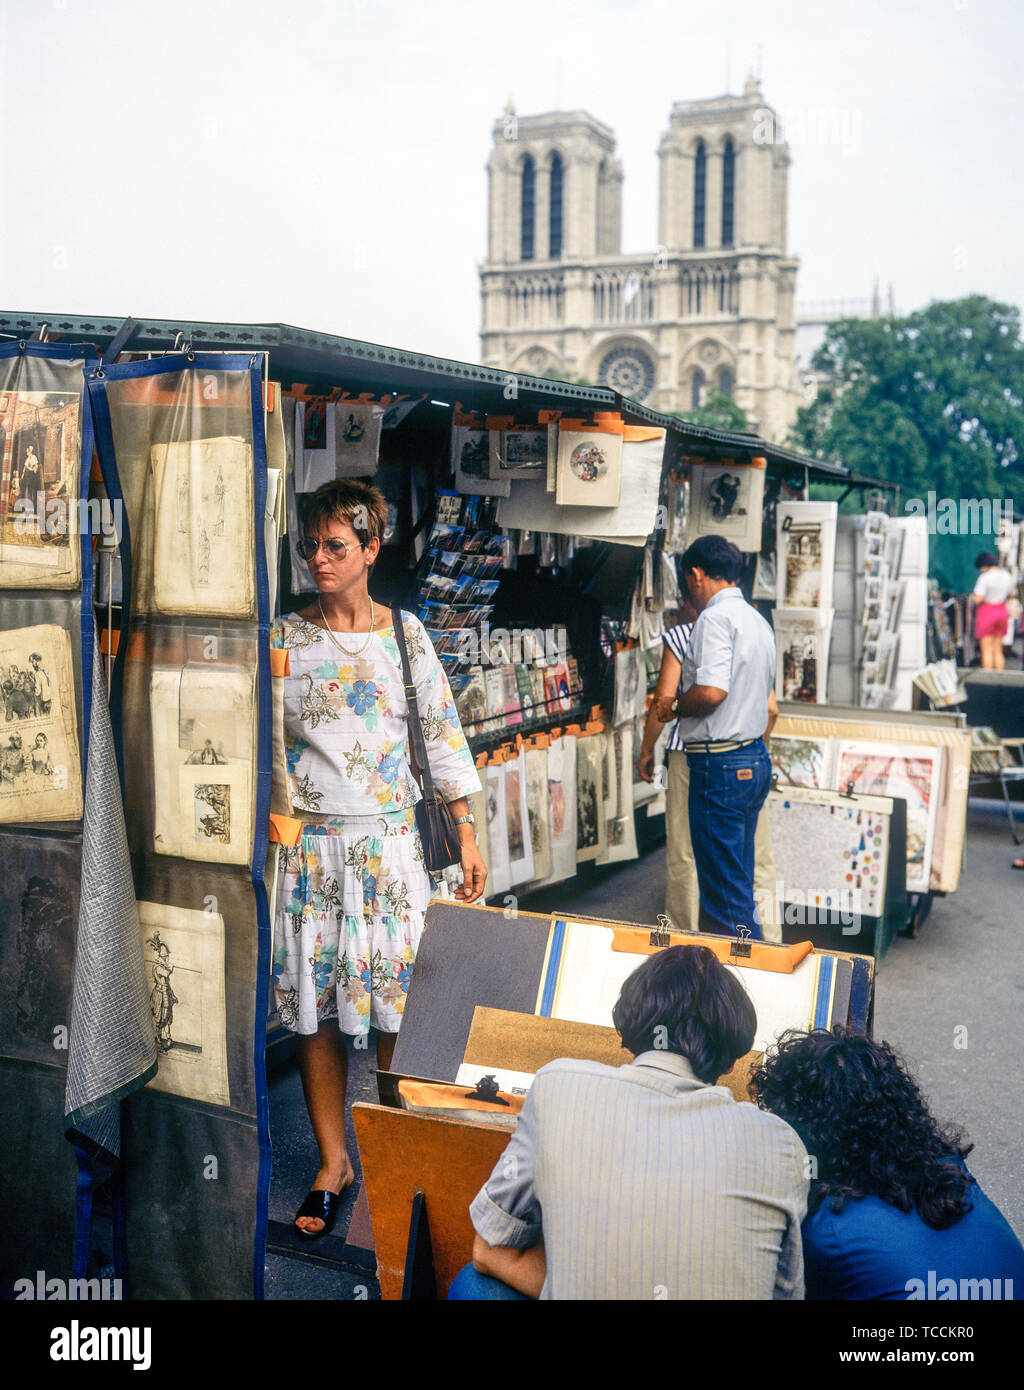 People shopping, secondhand booksellers, bouquinistes, quai de Montebello quay, Notre-Dame de Paris cathedral, Paris, France, Europe, Stock Photo